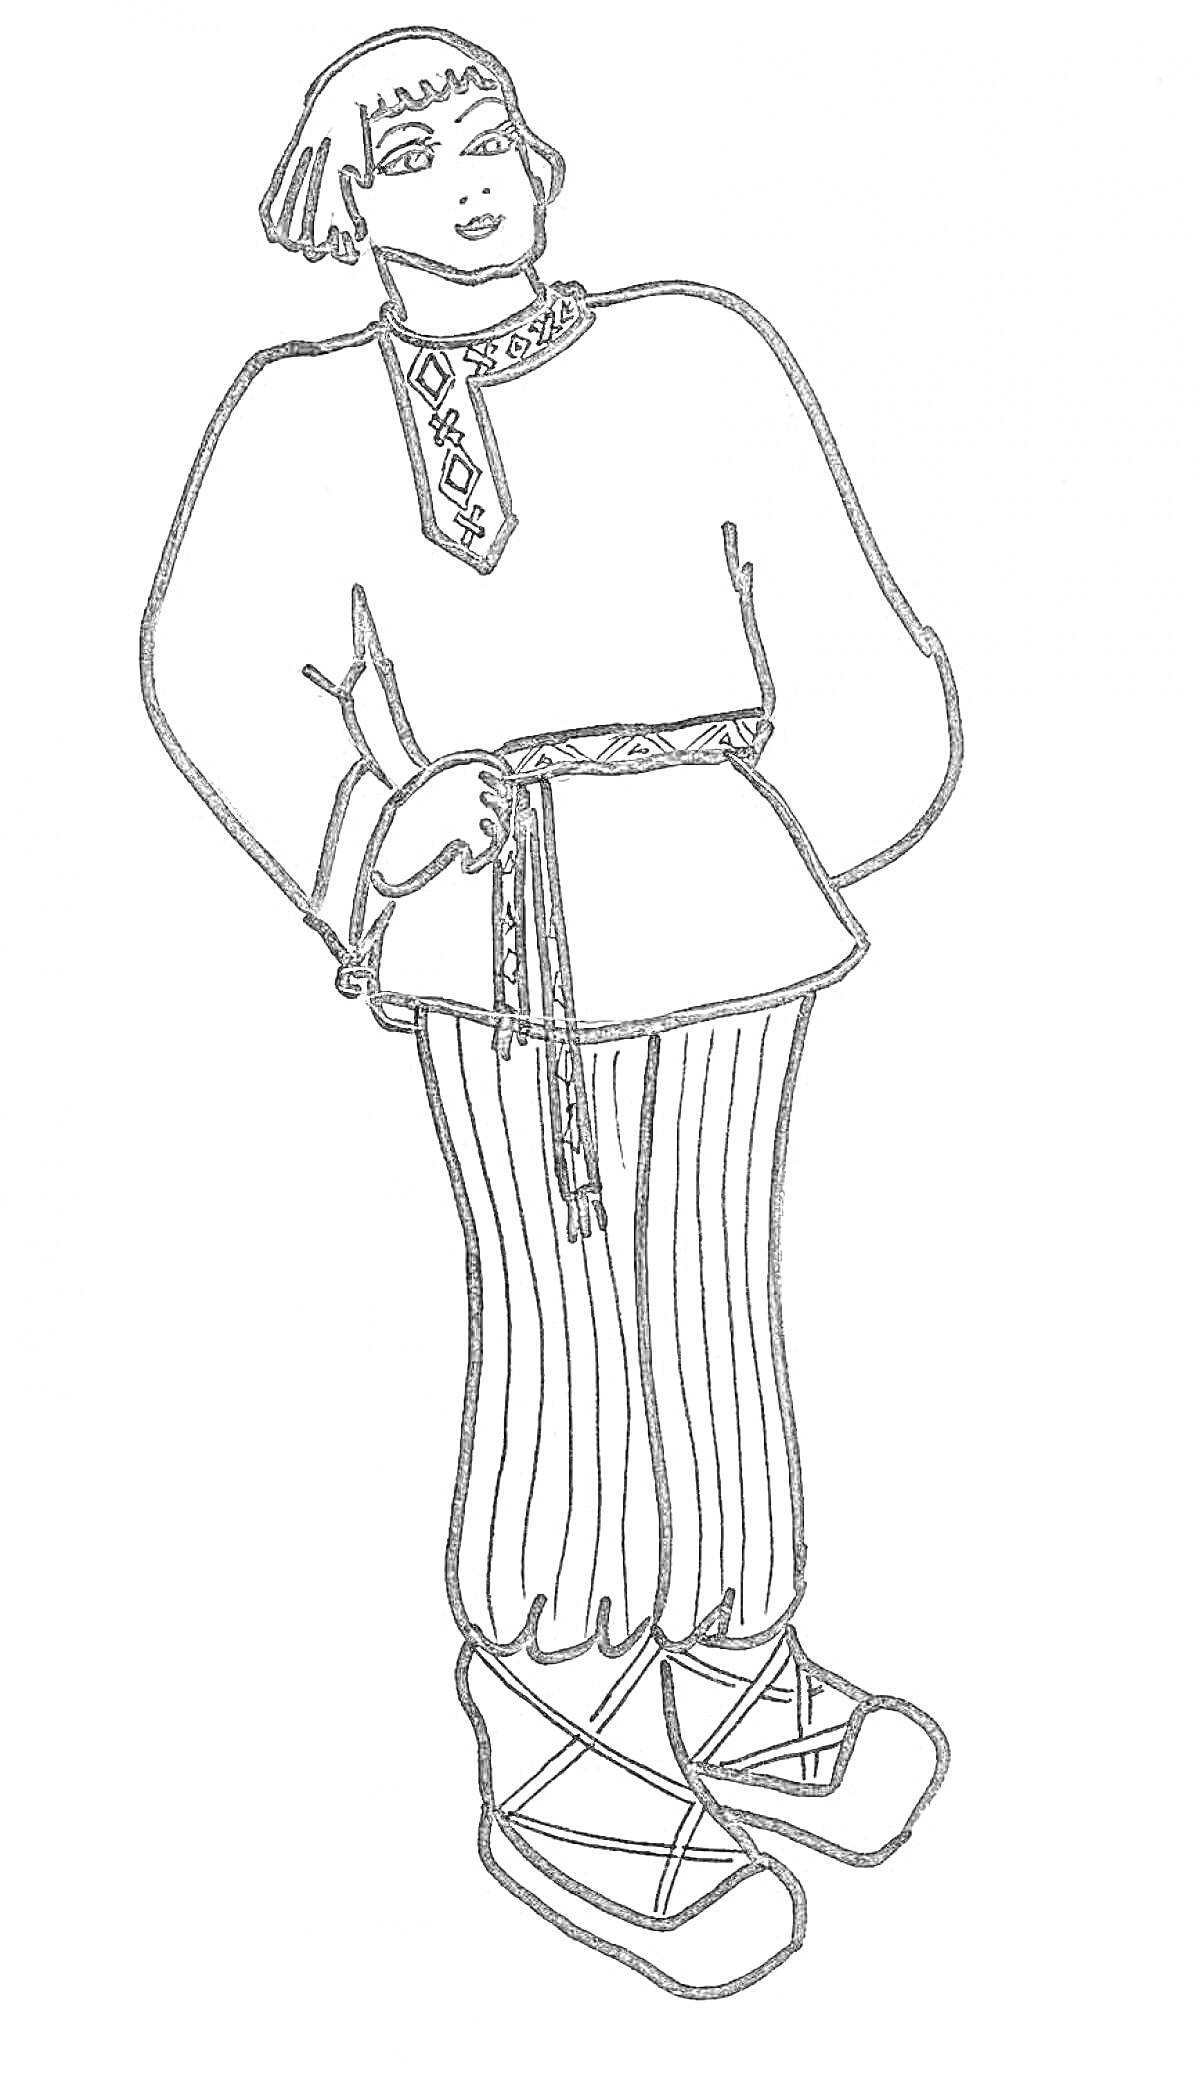 Мужской русский народный костюм. На изображении: рубаха с вышивкой, пояс, шаровары, лапти с обмотками.